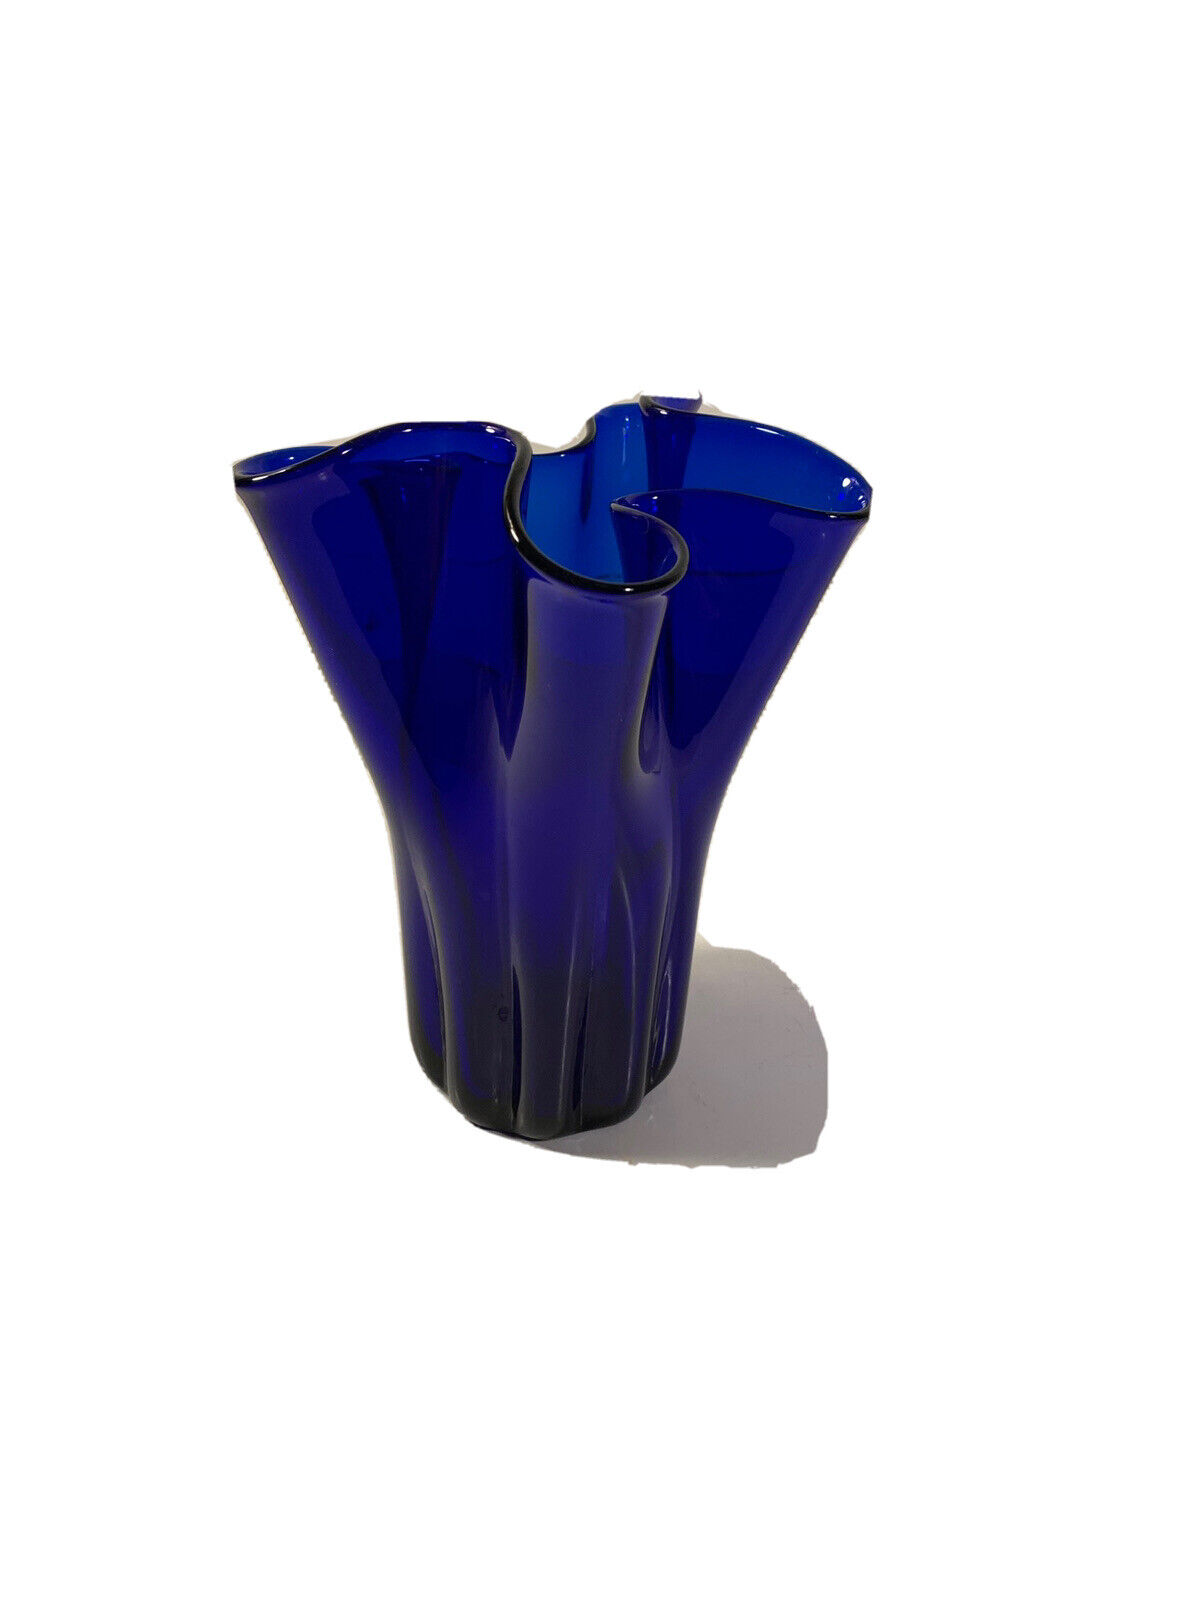 Vtg Handkerchief Vase Hand Blown Ground Pontil About 7” Tall Cobalt Blue Wavy